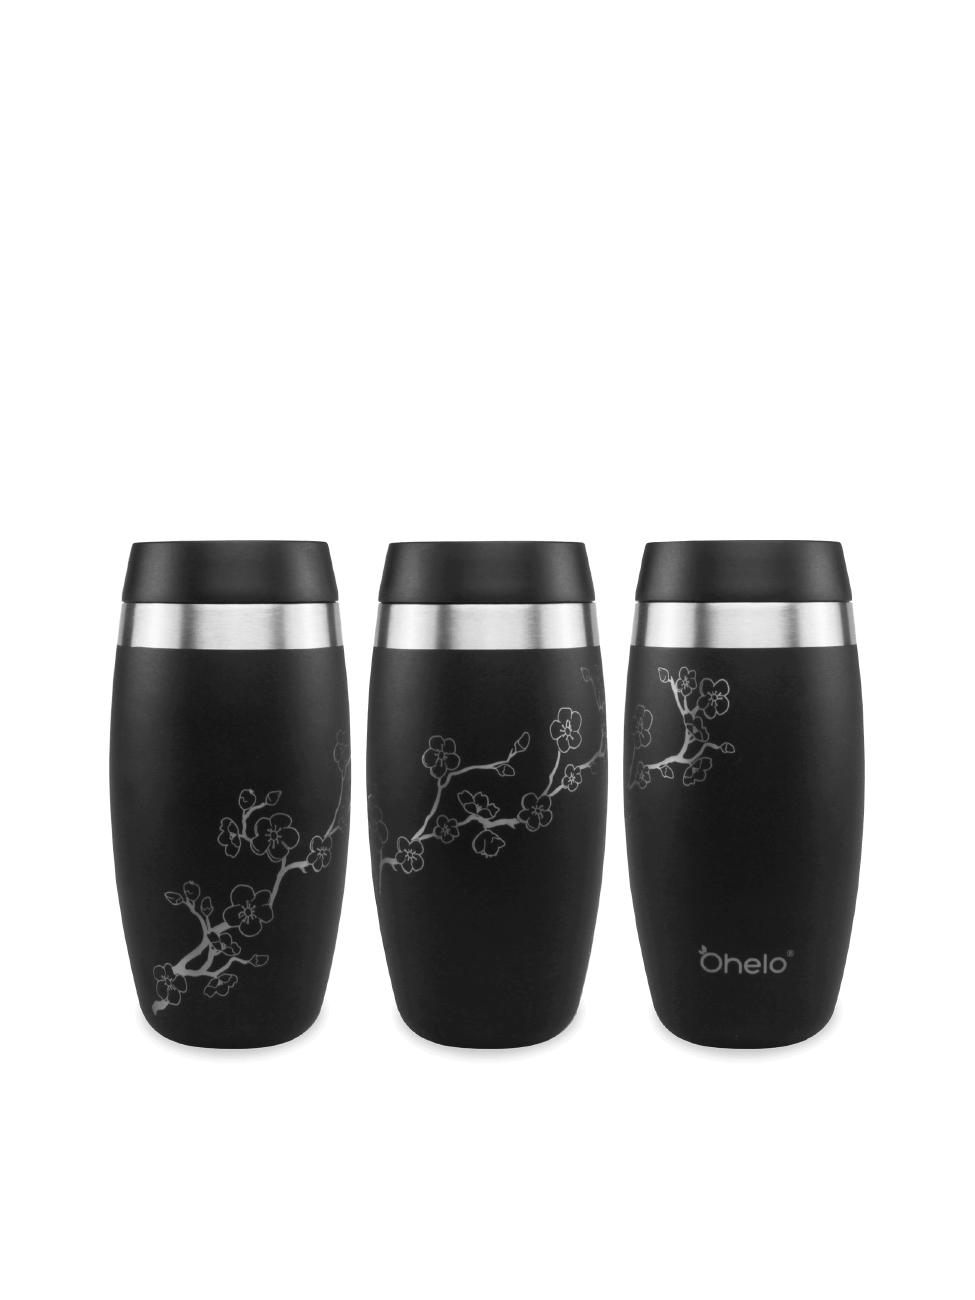 Ohelo black travel mug in floral design - image showing design from 3 sides